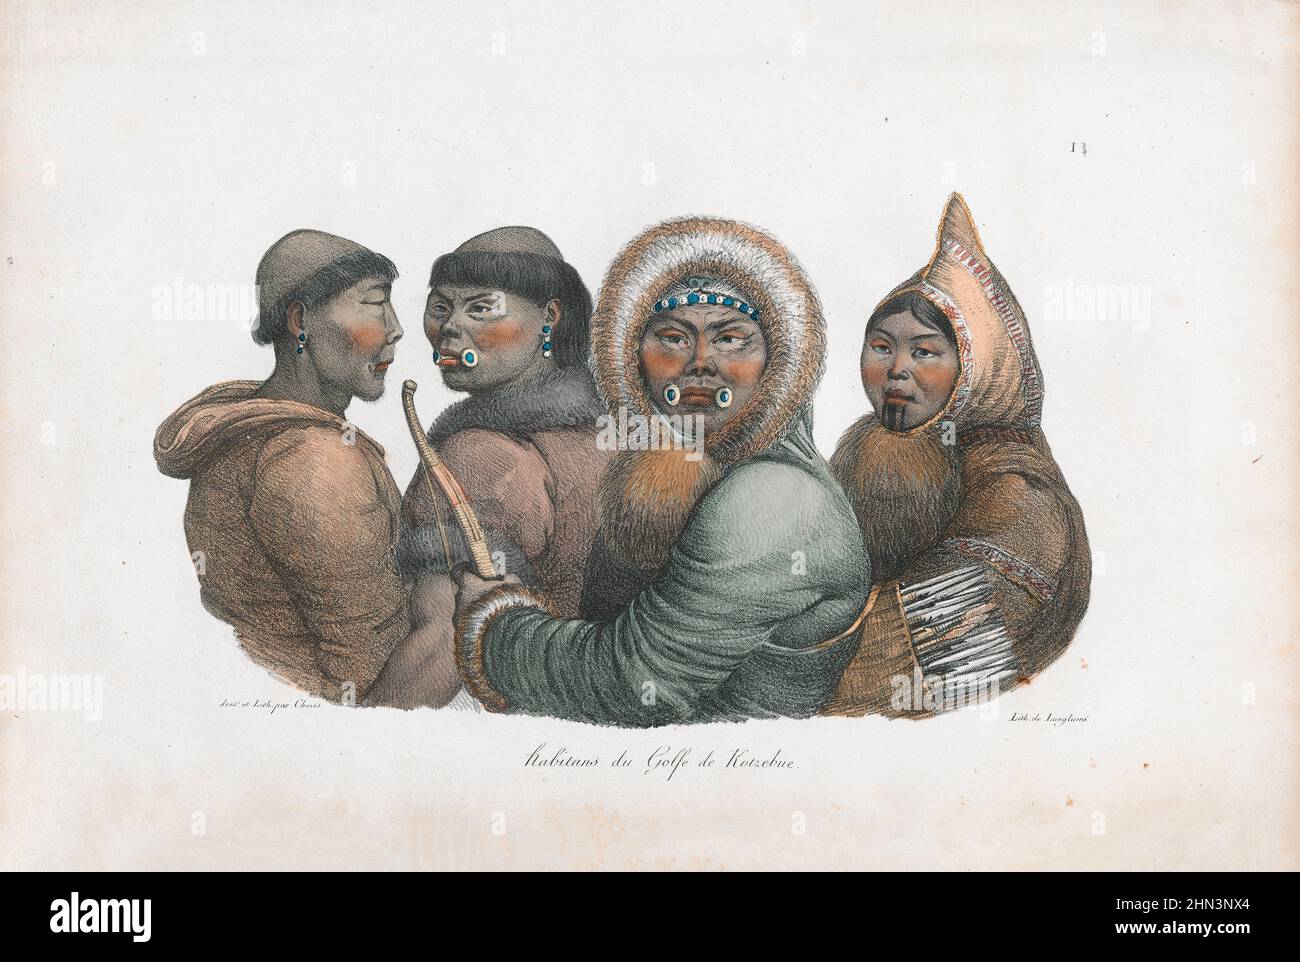 Ilustración de color vintage de los habitantes del Sonido Kotzebue. 1822, por Louis Choris. Kotzebue Sound es un brazo del mar de Chukchi en el reg occidental Foto de stock